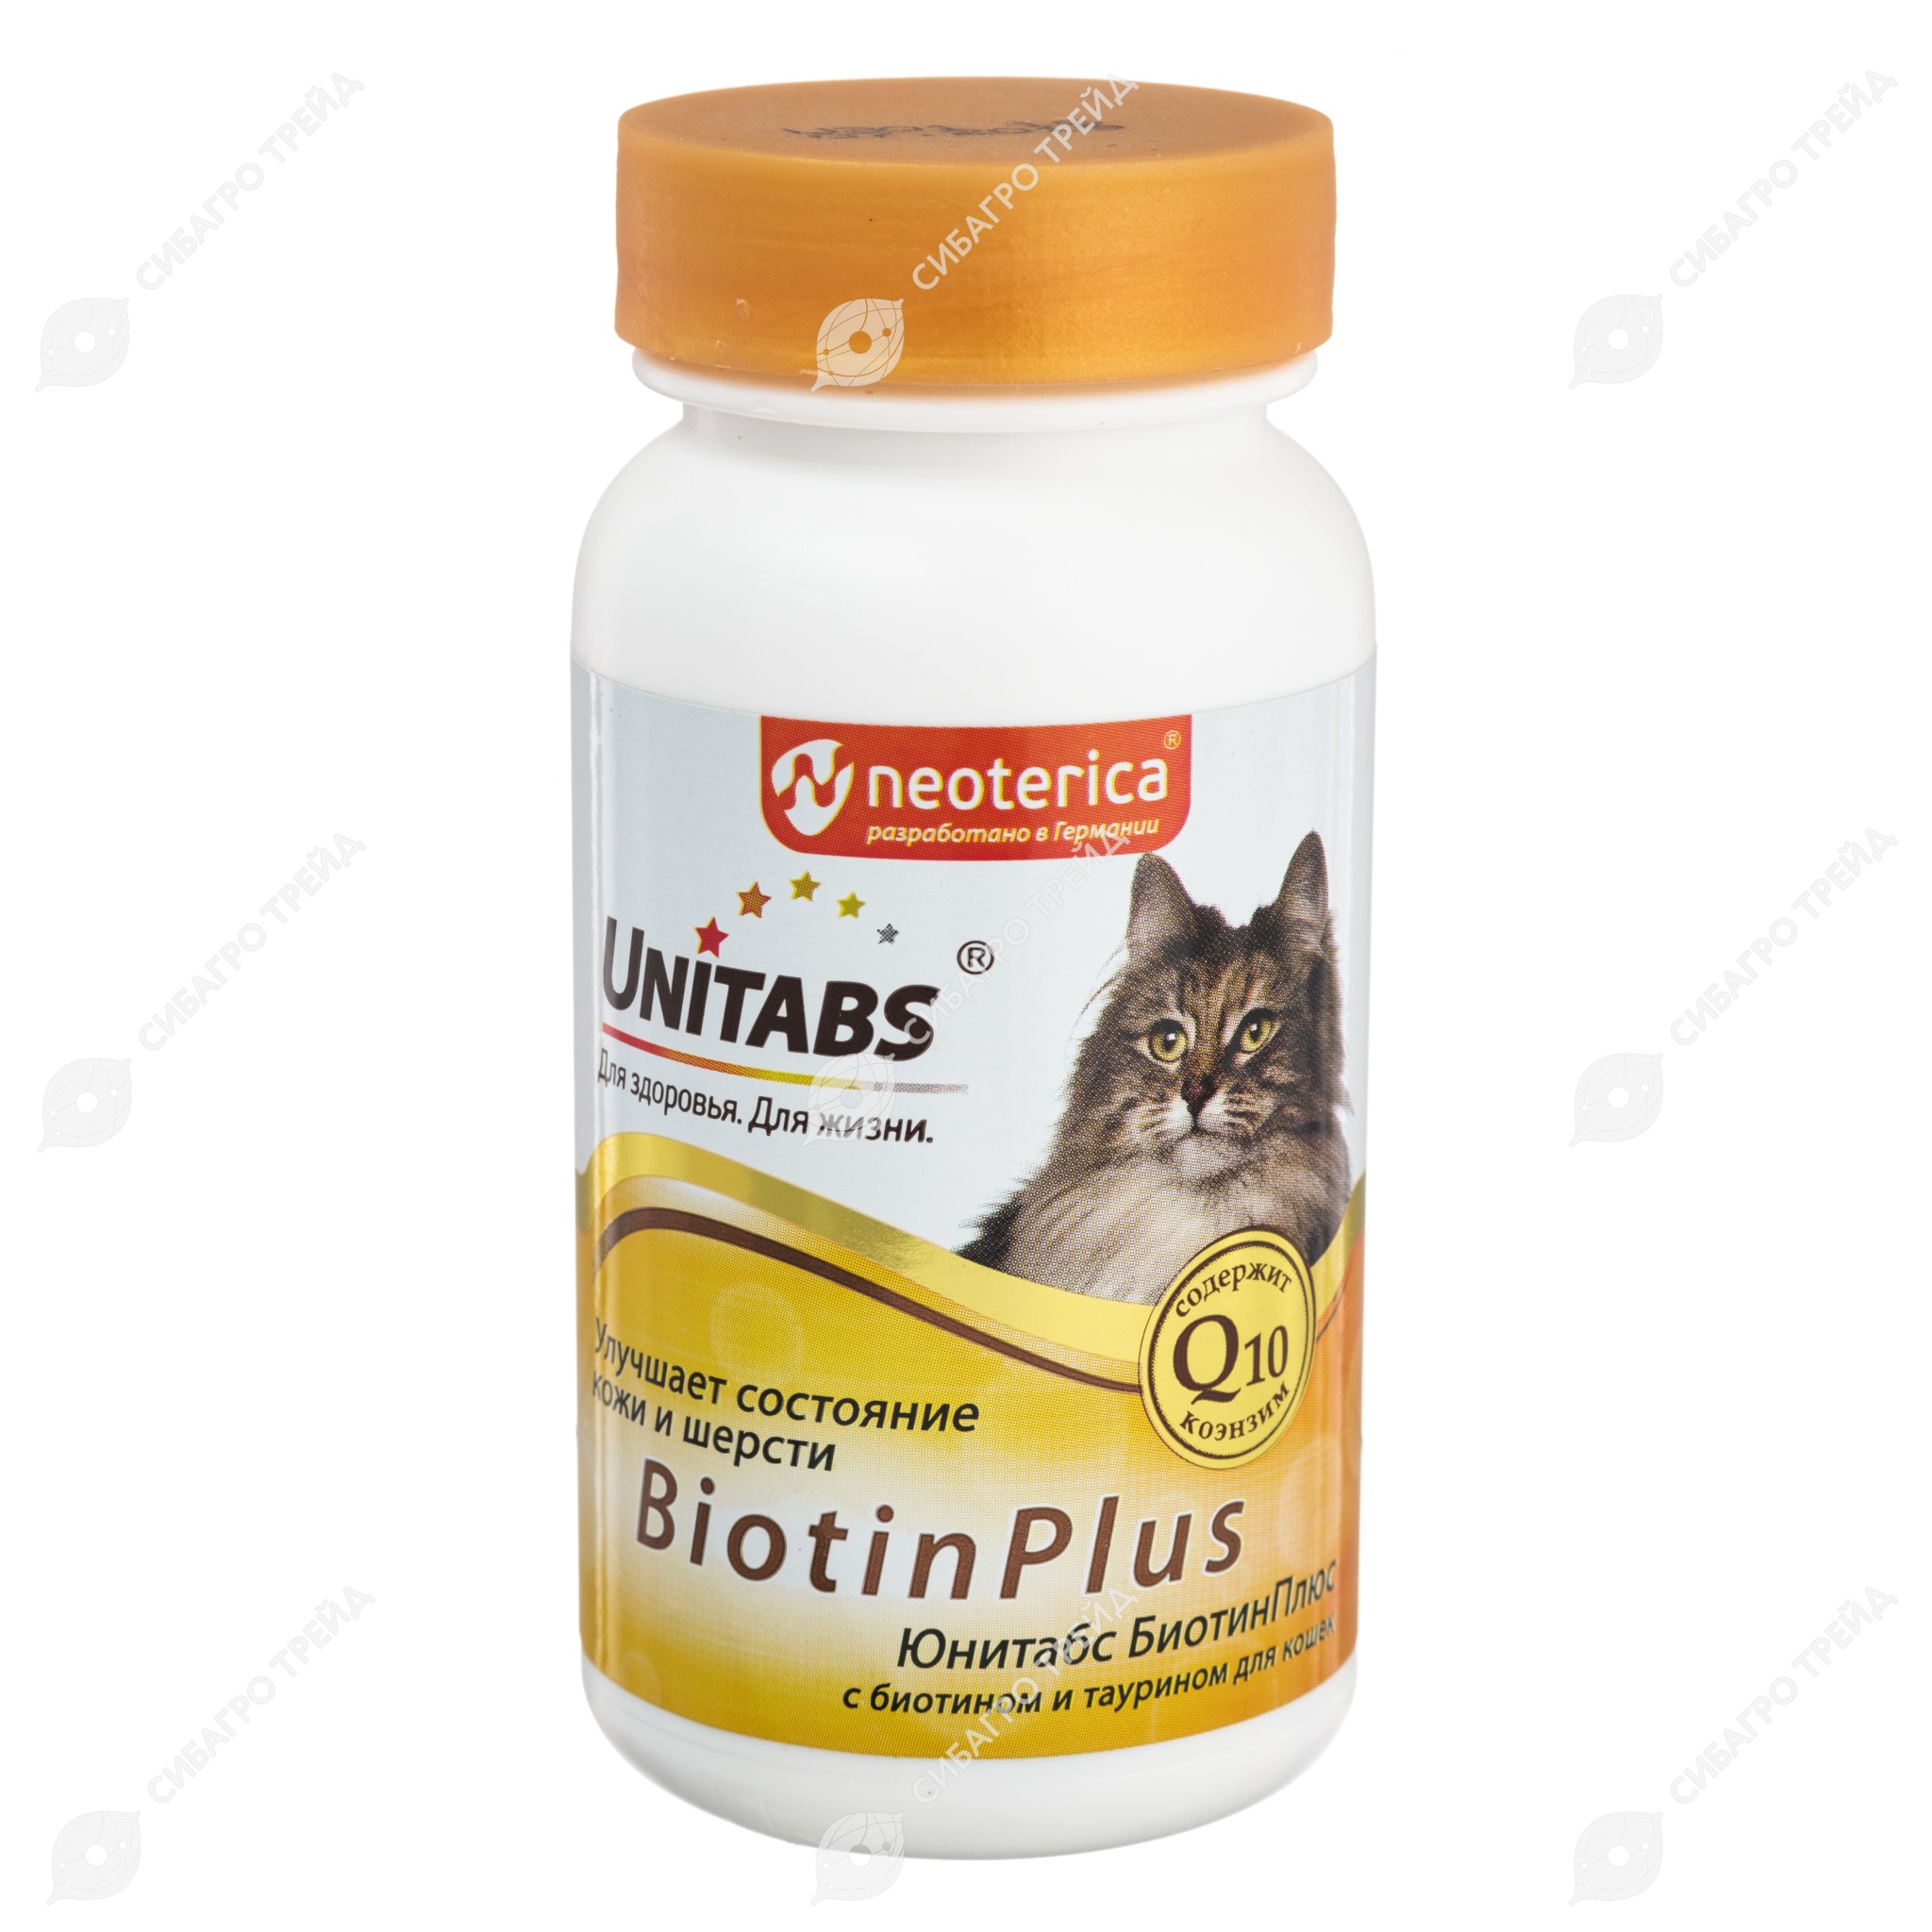 UNITABS BiotinPlus для кожи и шерсти для кошек, 120 табл.